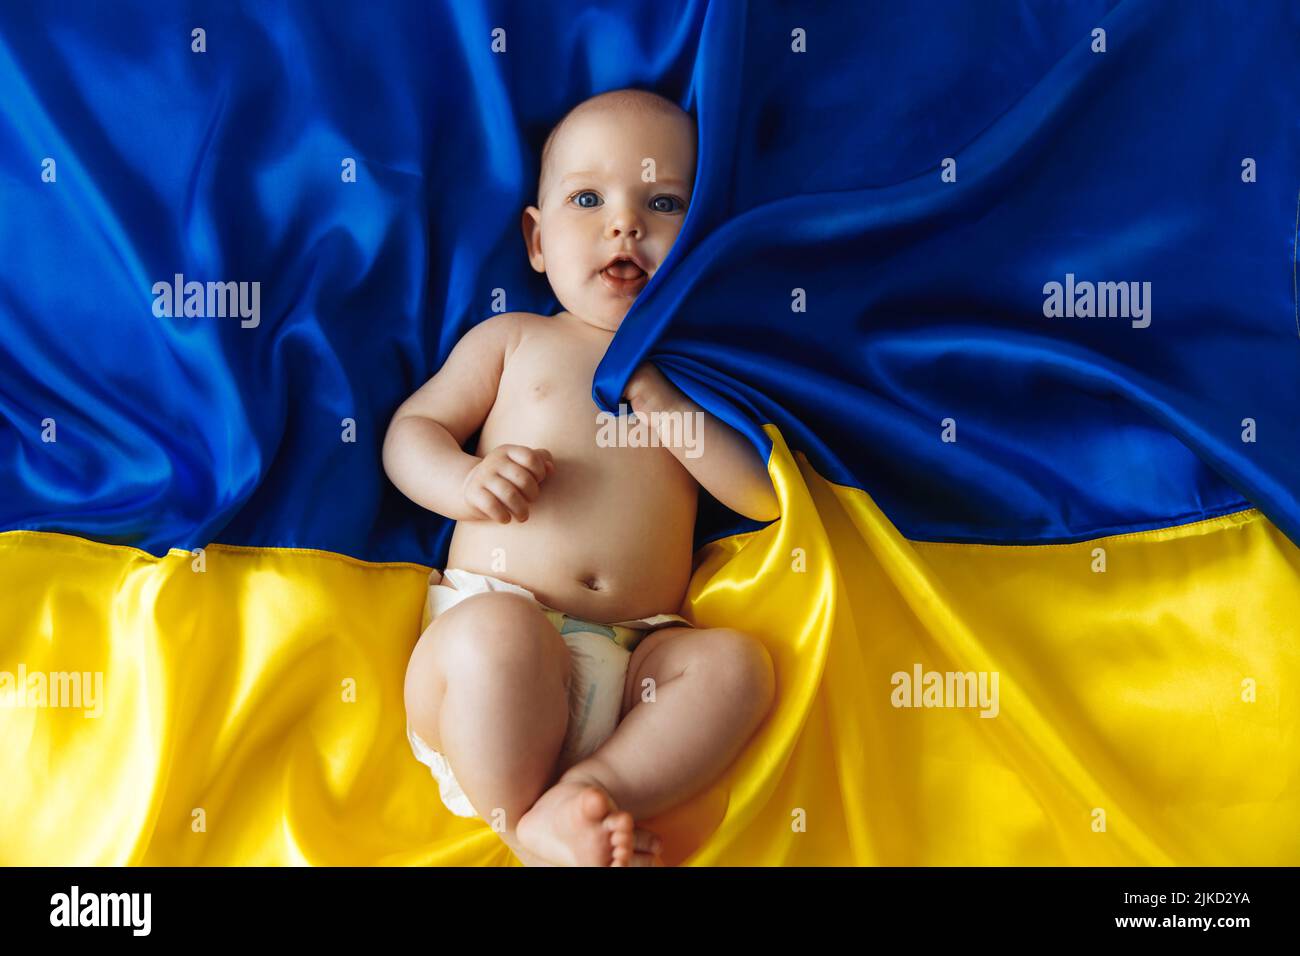 Betet für die Ukraine. Kleines wehrloses Baby liegt auf der blau-gelben ukrainischen Flagge. Protest gegen den Krieg, Krise, Frieden, Ende der Aggression, Kind wieder Stockfoto